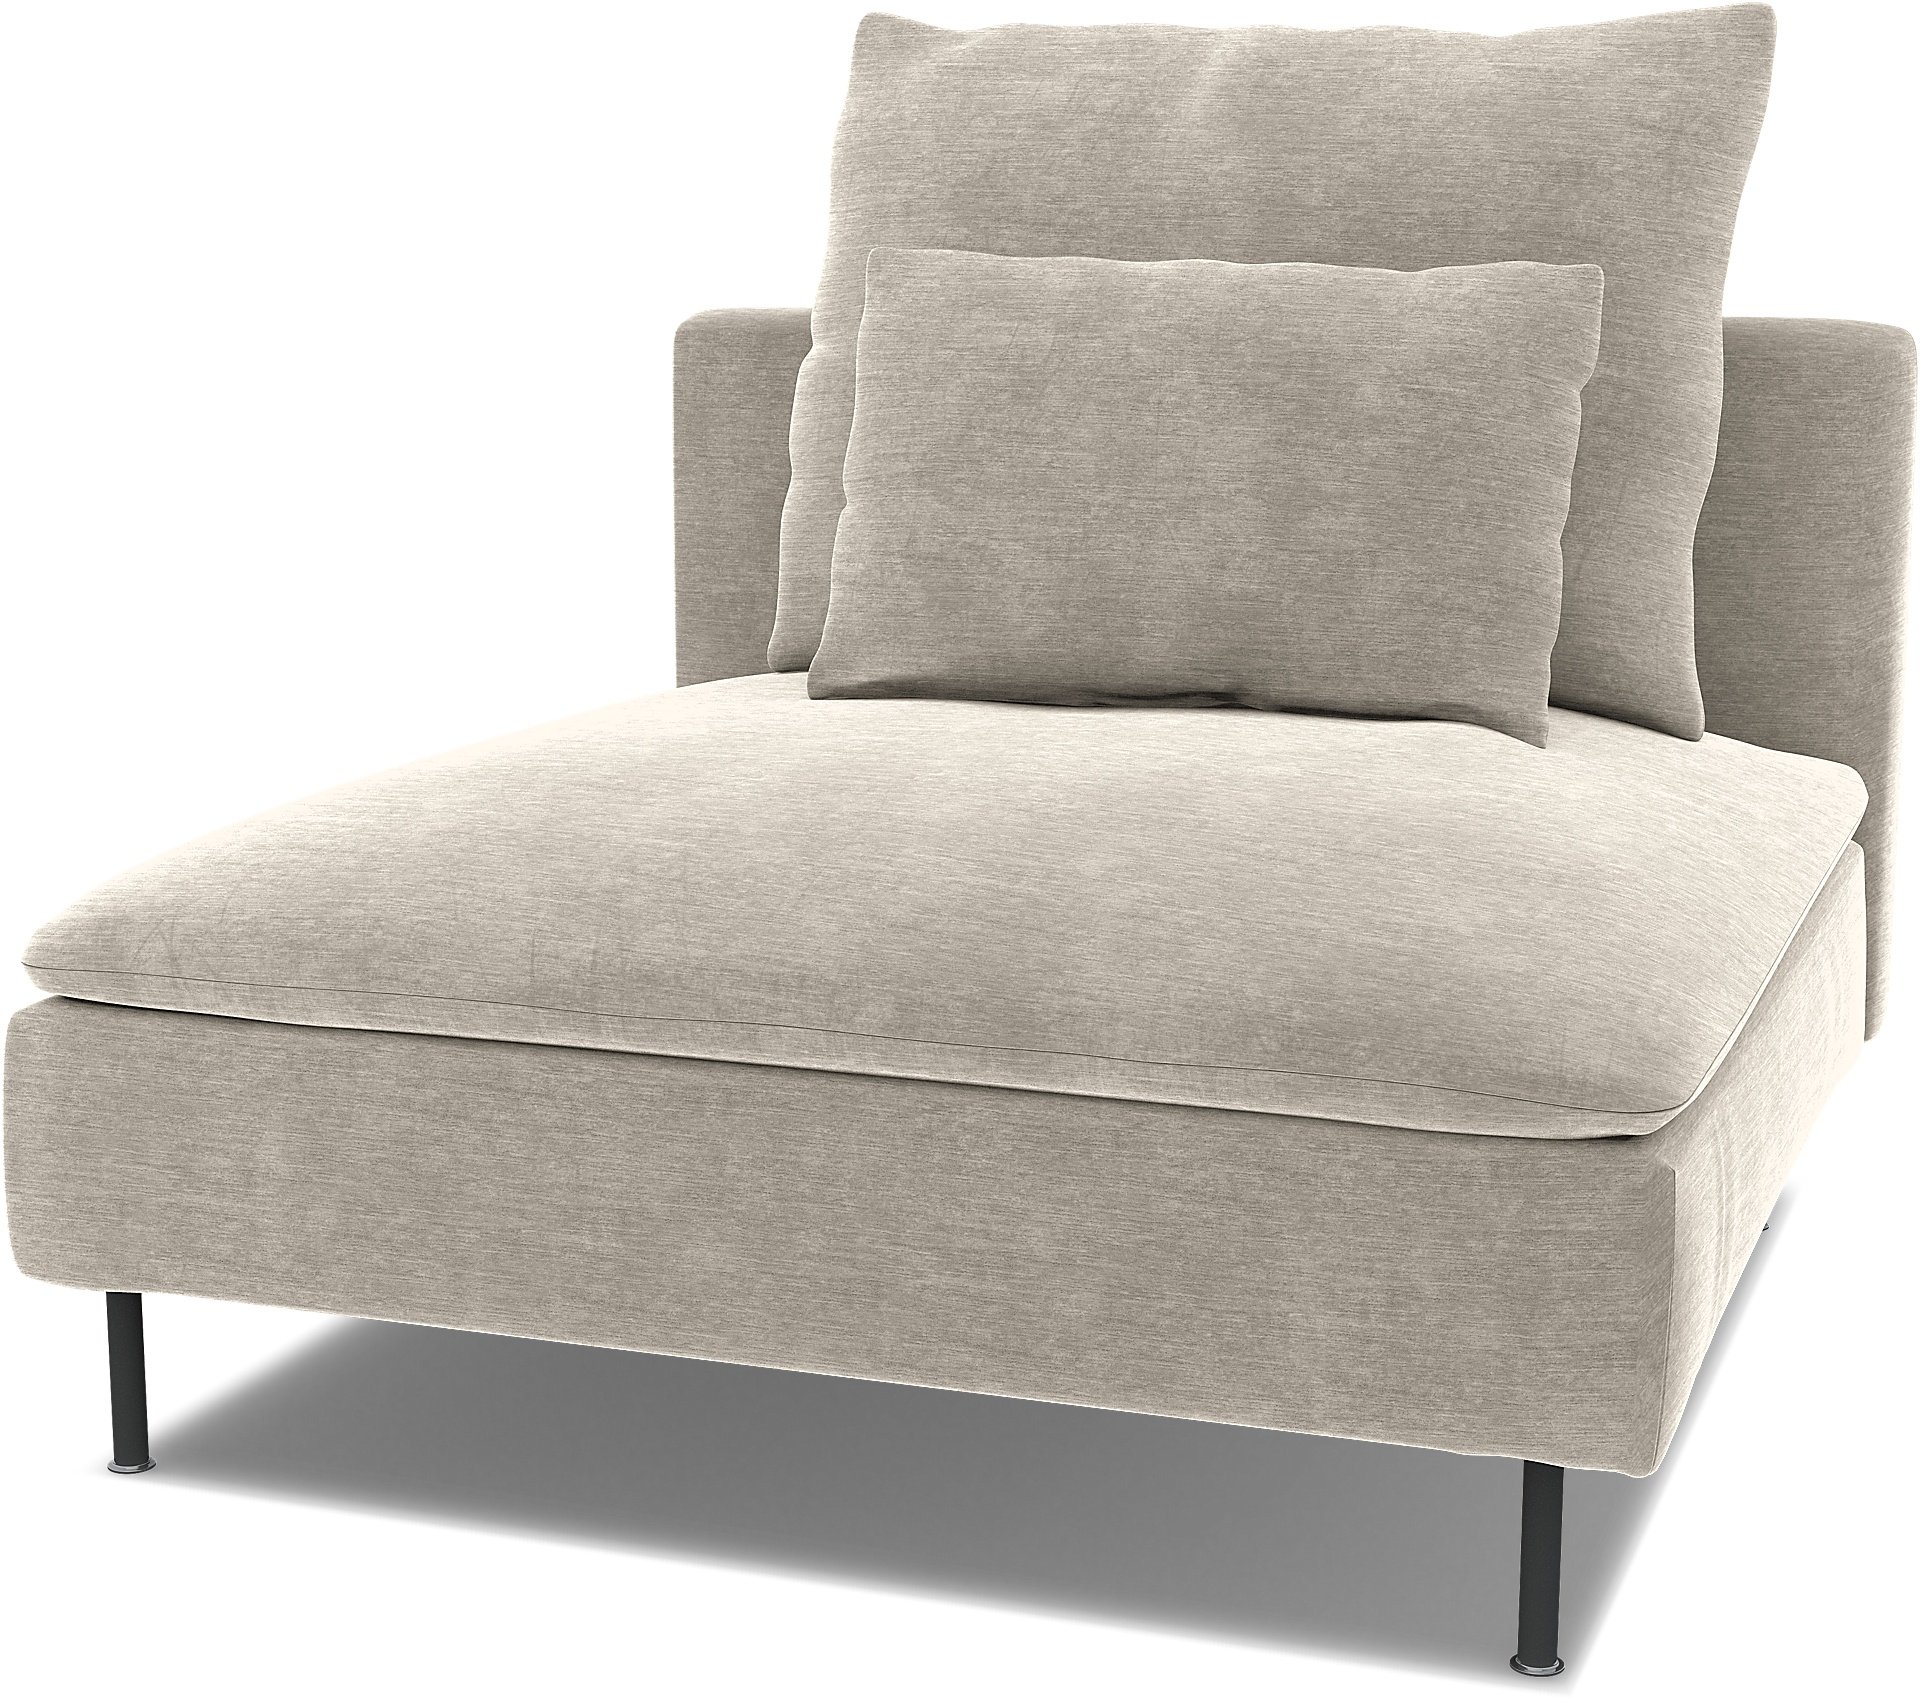 Spare seat cushion cover for SODERHAMN 1 SEAT SECTION , Natural White, Velvet - Bemz